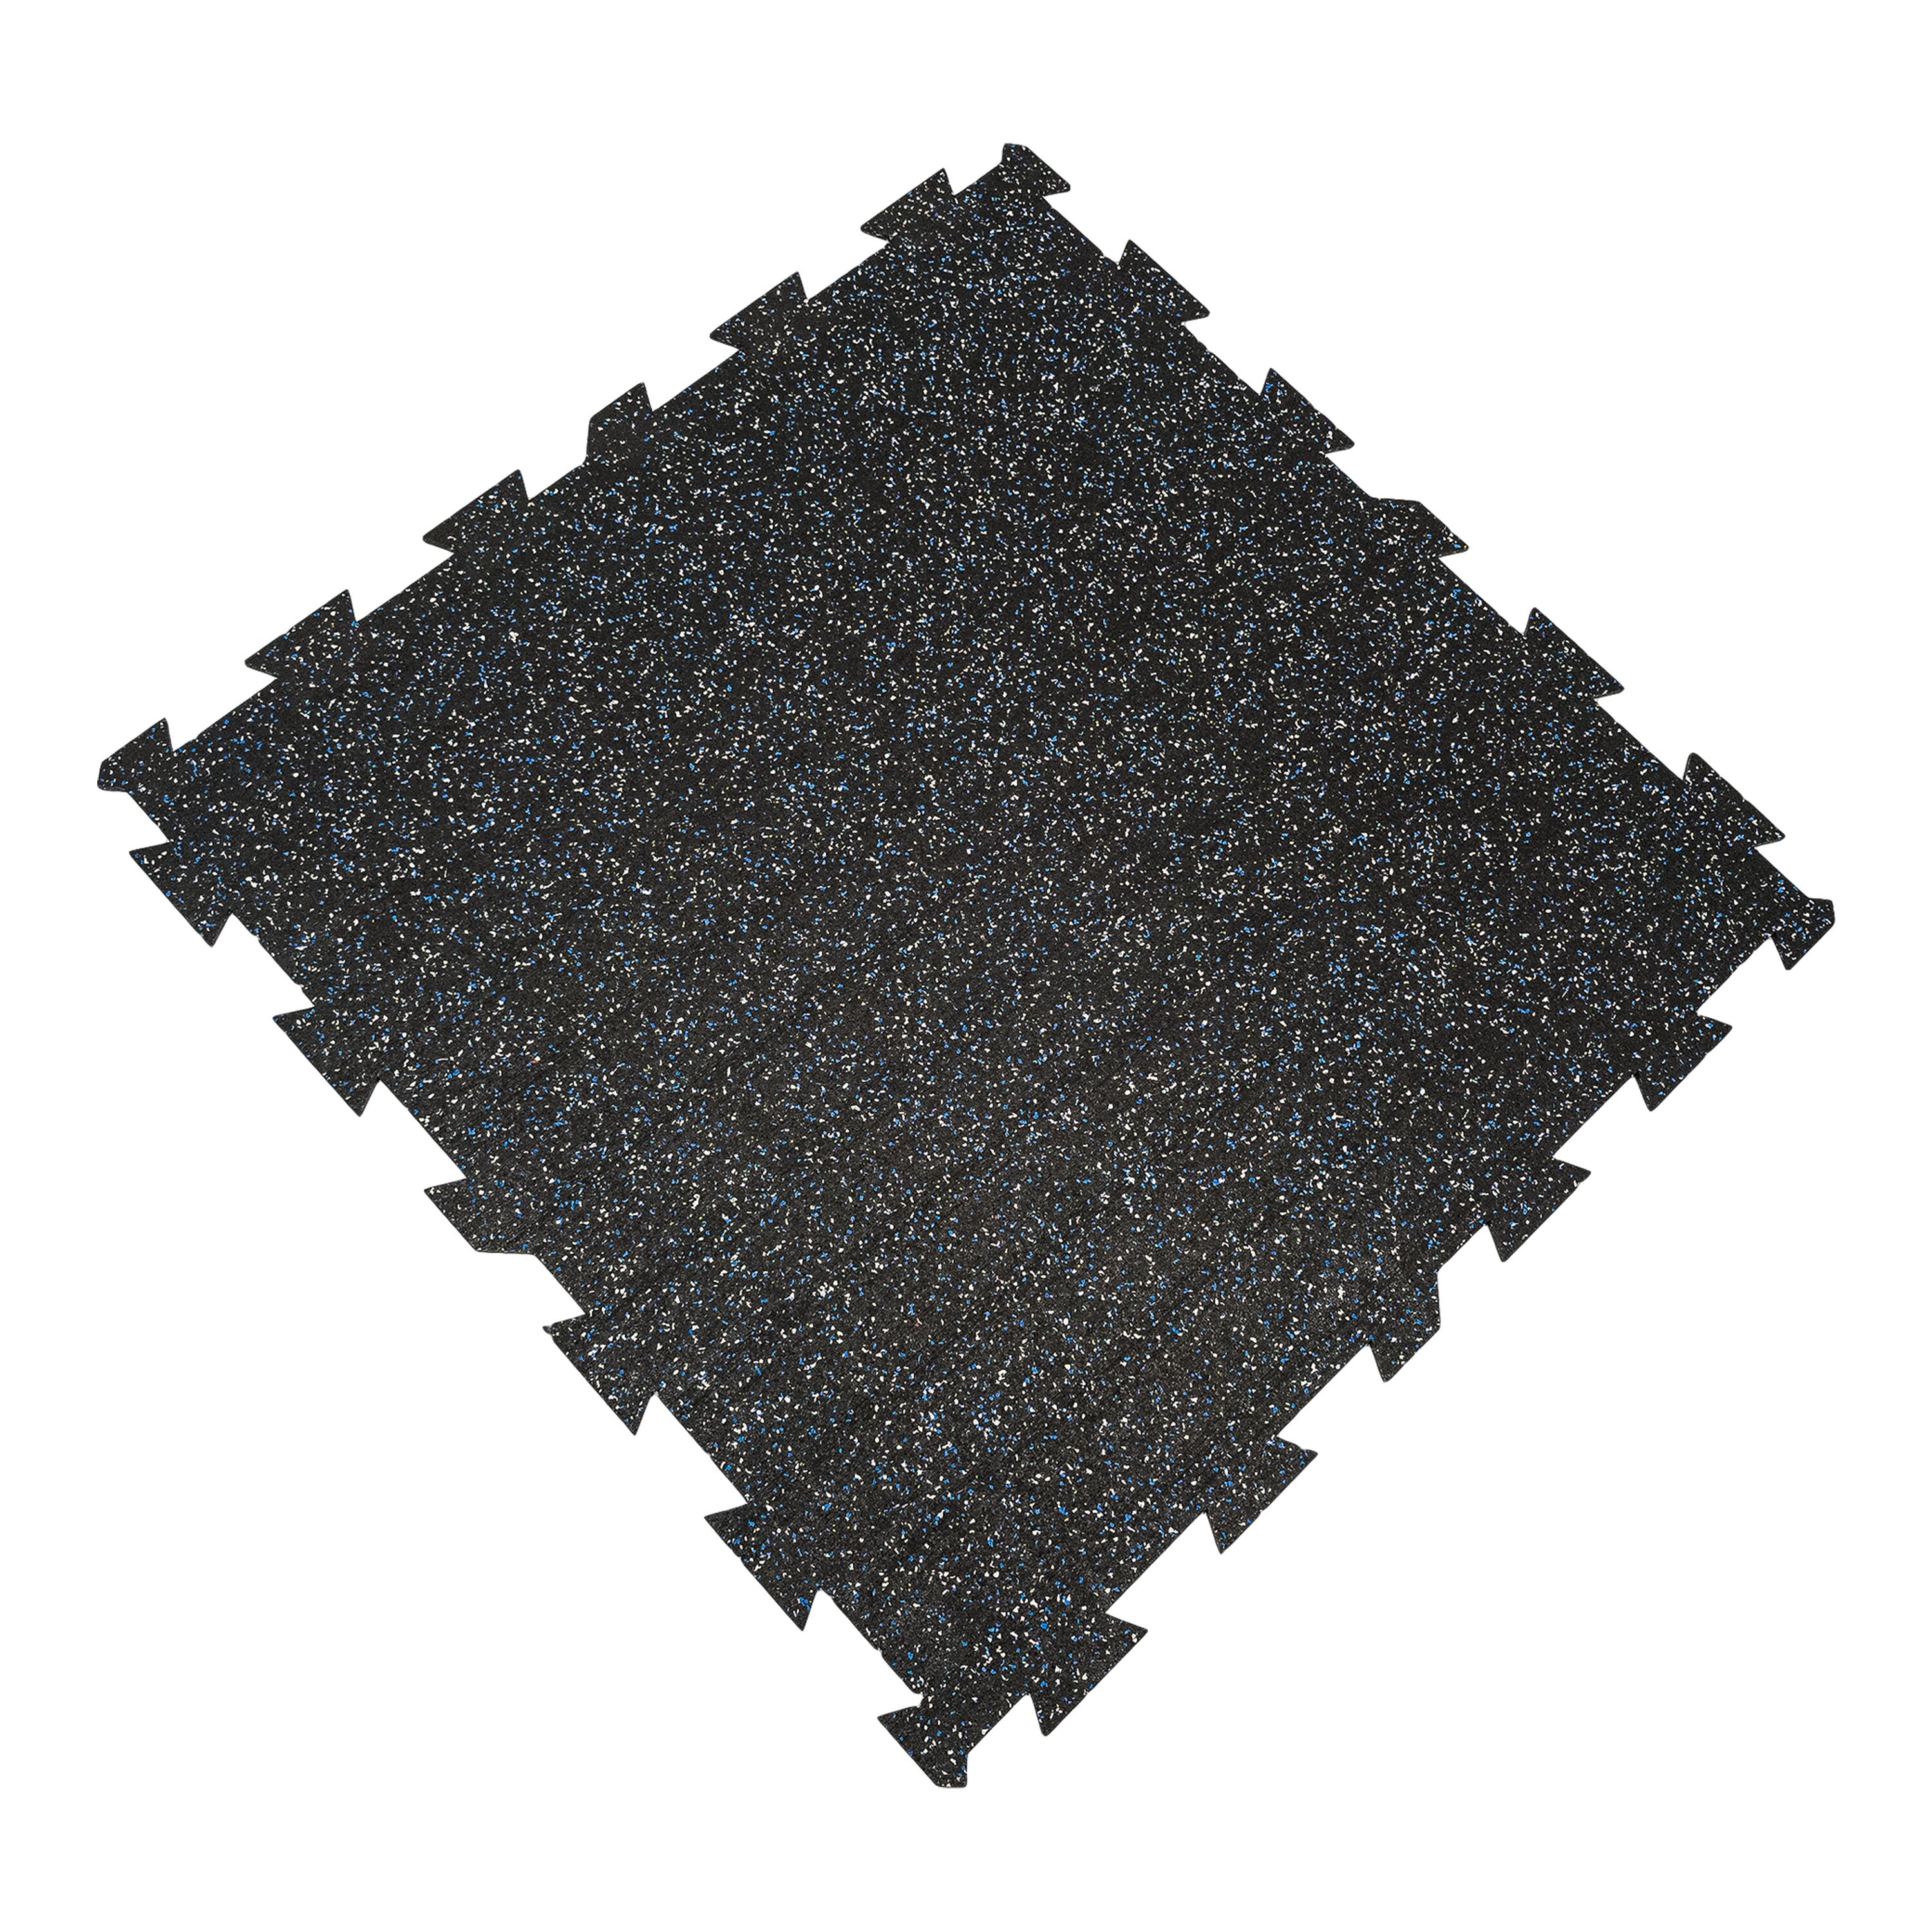 Čierno-bielo-modrá gumová modulová puzzle dlažba (stred) FLOMA FitFlo SF1050 - dĺžka 100 cm, šírka 100 cm, výška 0,8 cm